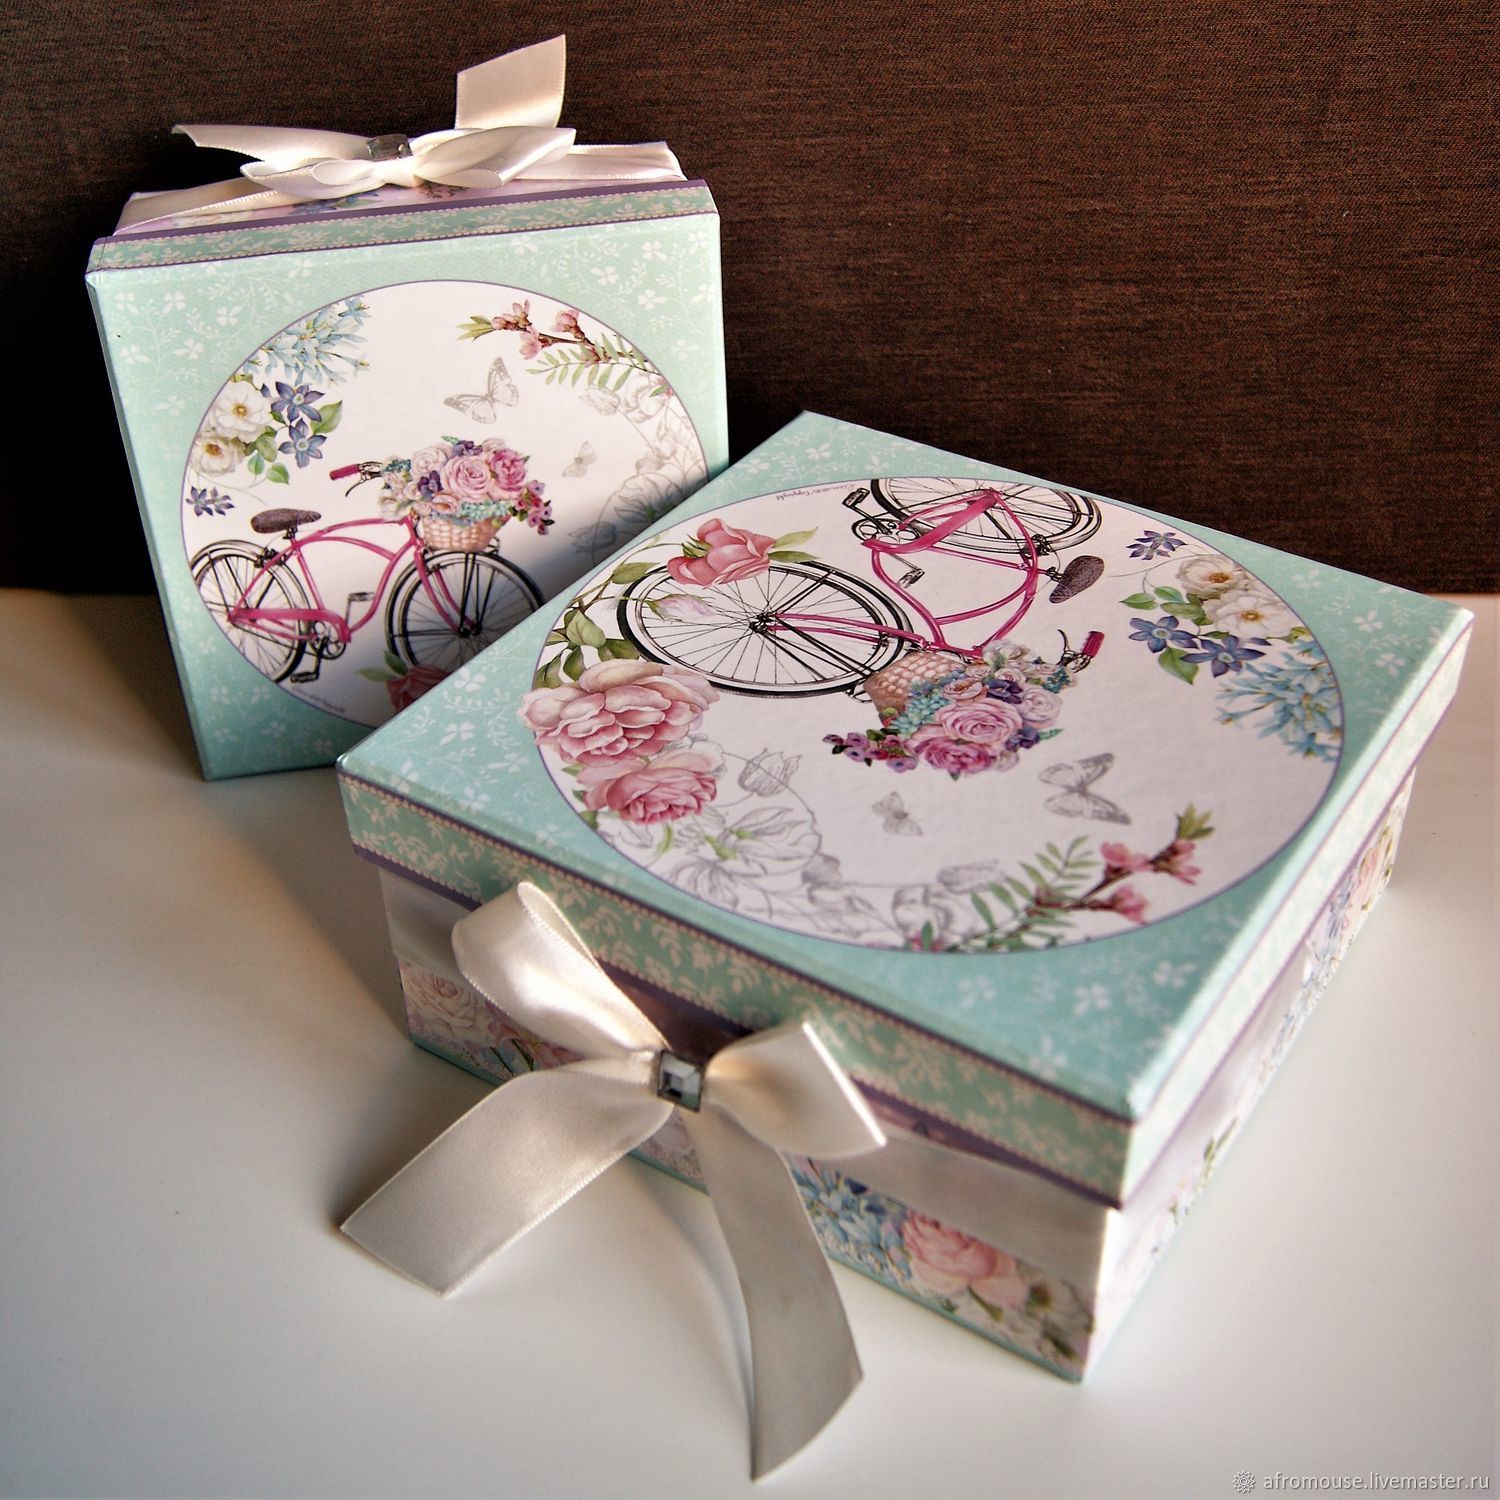 Купить красивые коробку. Красивые коробки. Дизайнерские коробочки. Красивые коробочки для подарков. Украшение коробки для подарка.